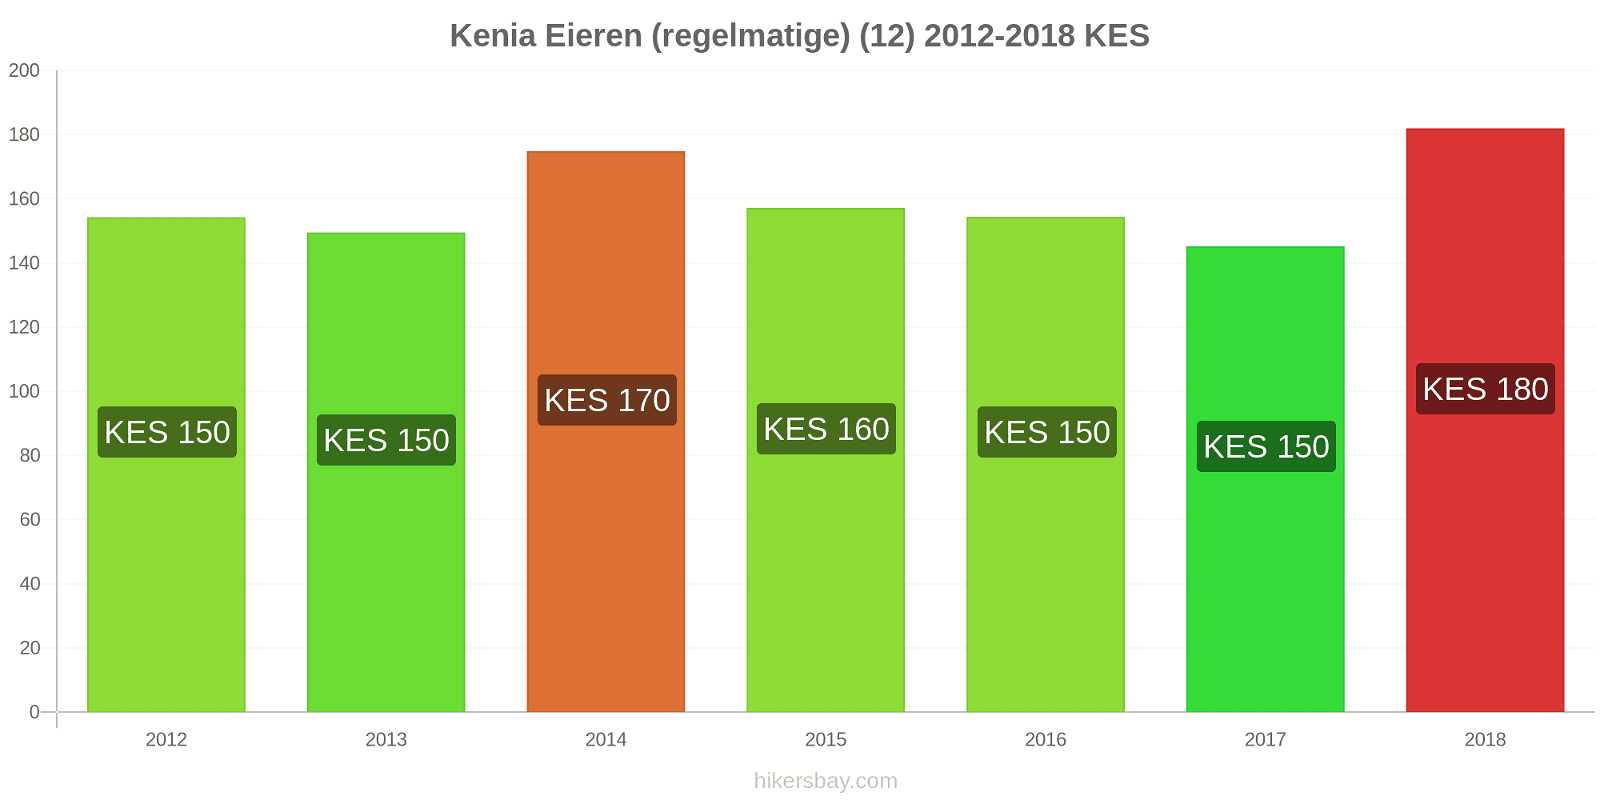 Kenia prijswijzigingen Eieren (regelmatig) (12) hikersbay.com